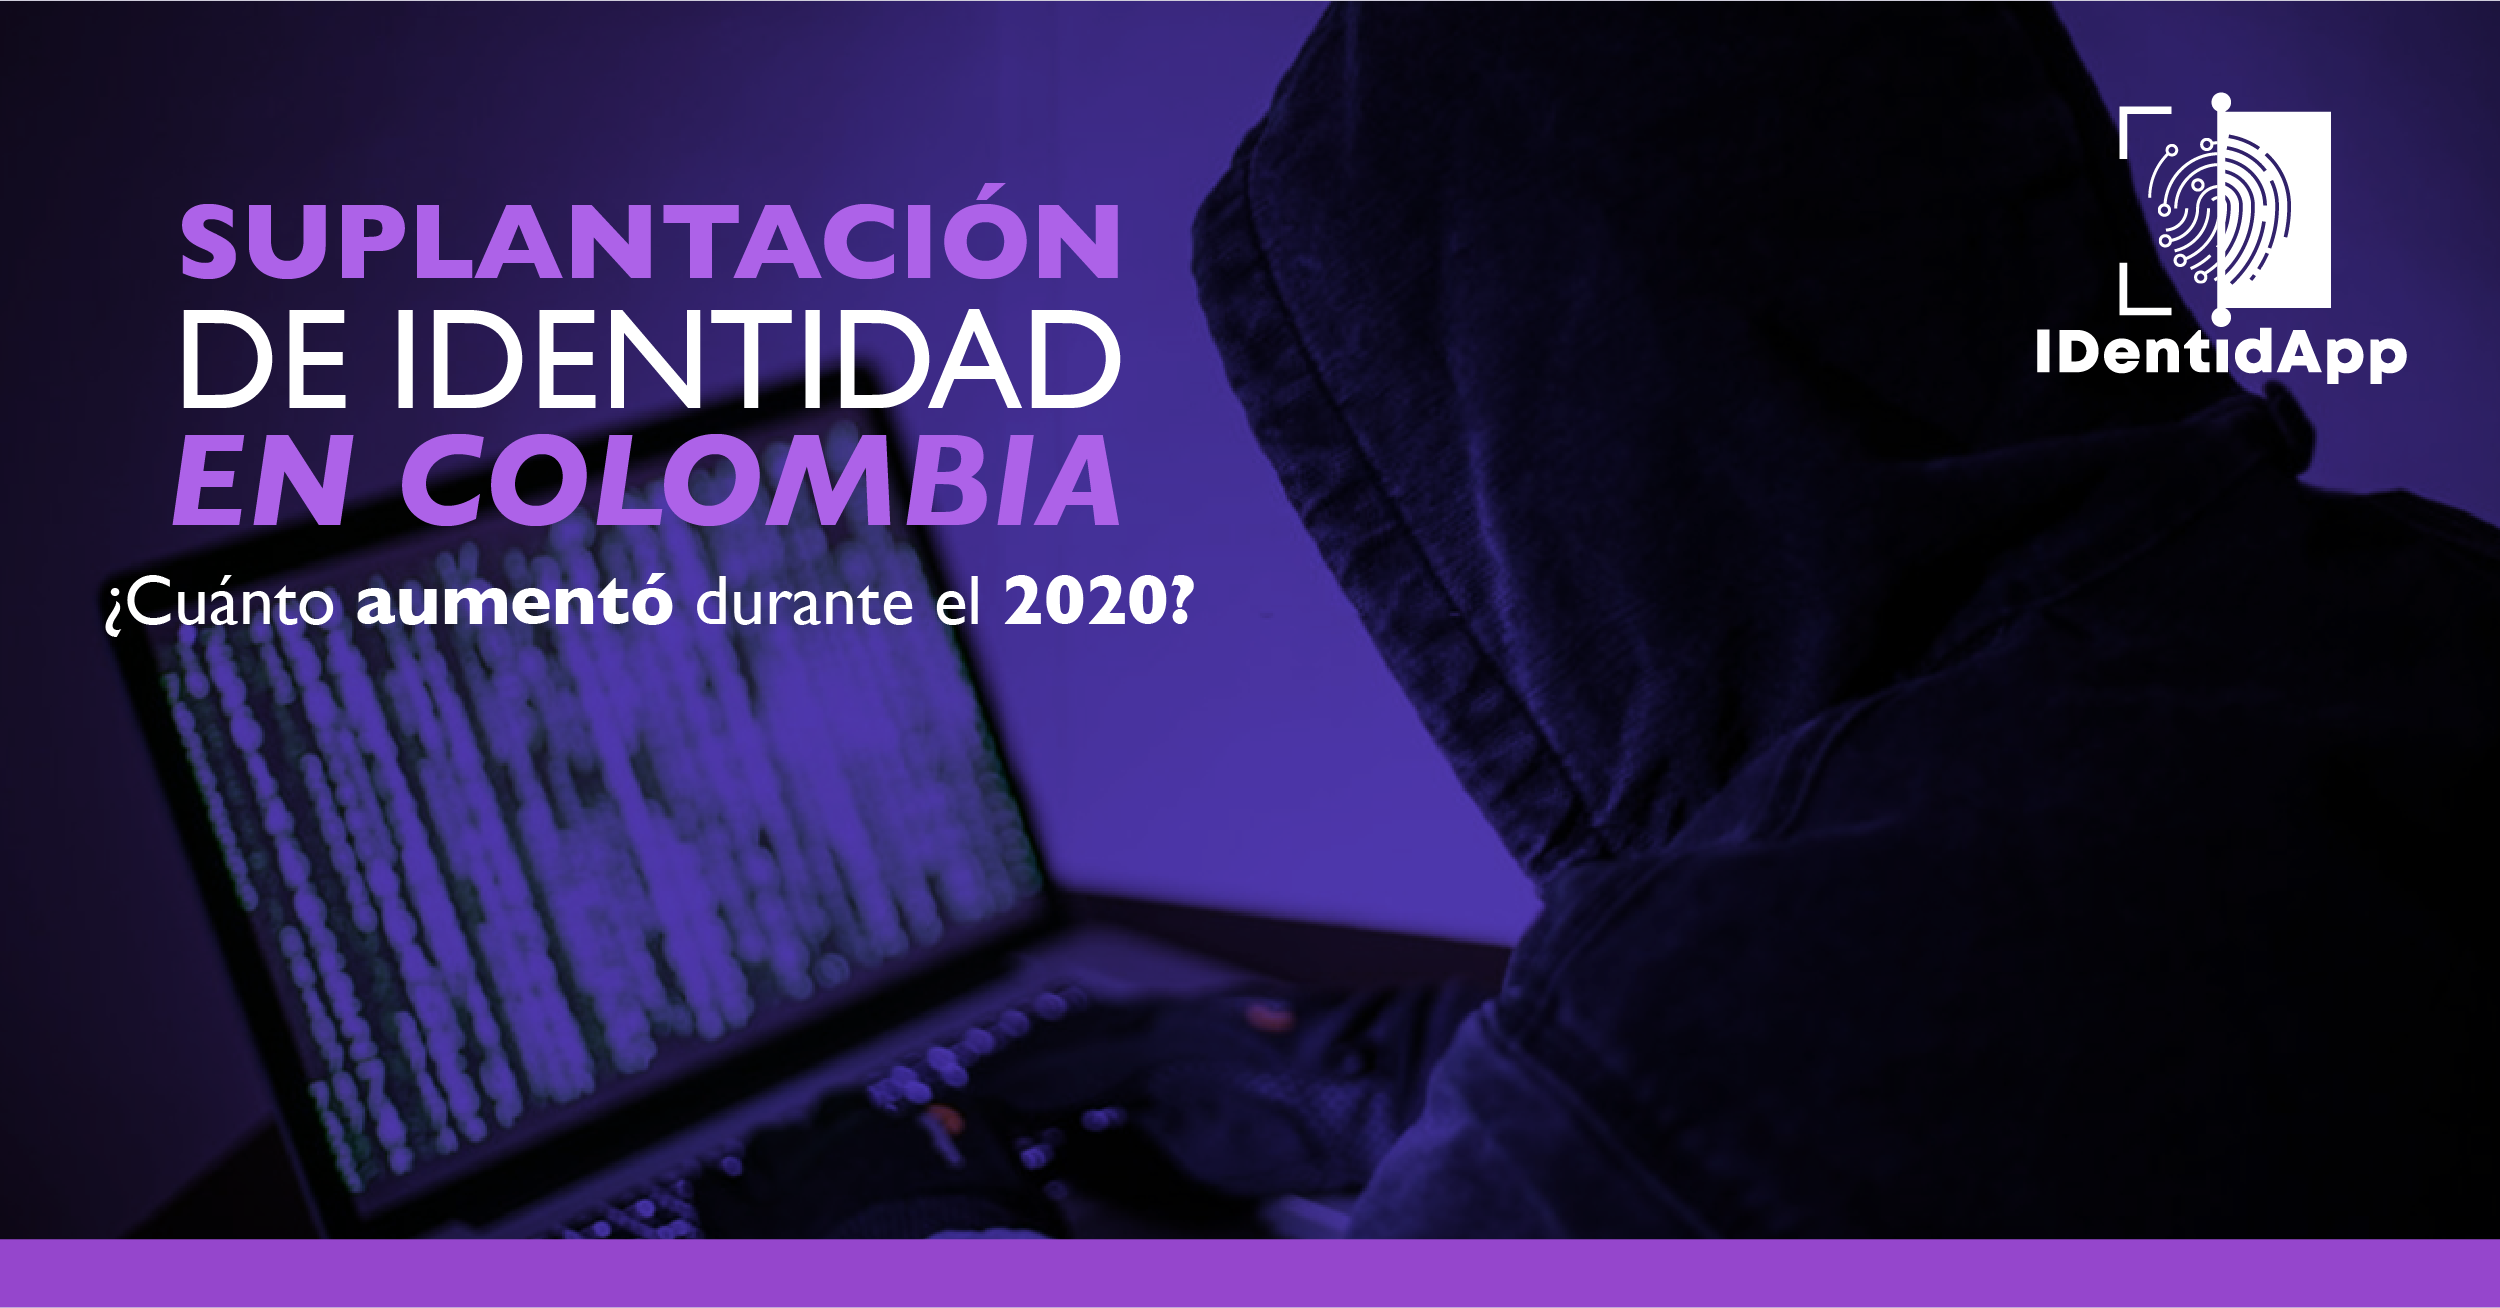 ¿Cuánto aumentó la suplantación de identidad en Colombia durante el 2020?